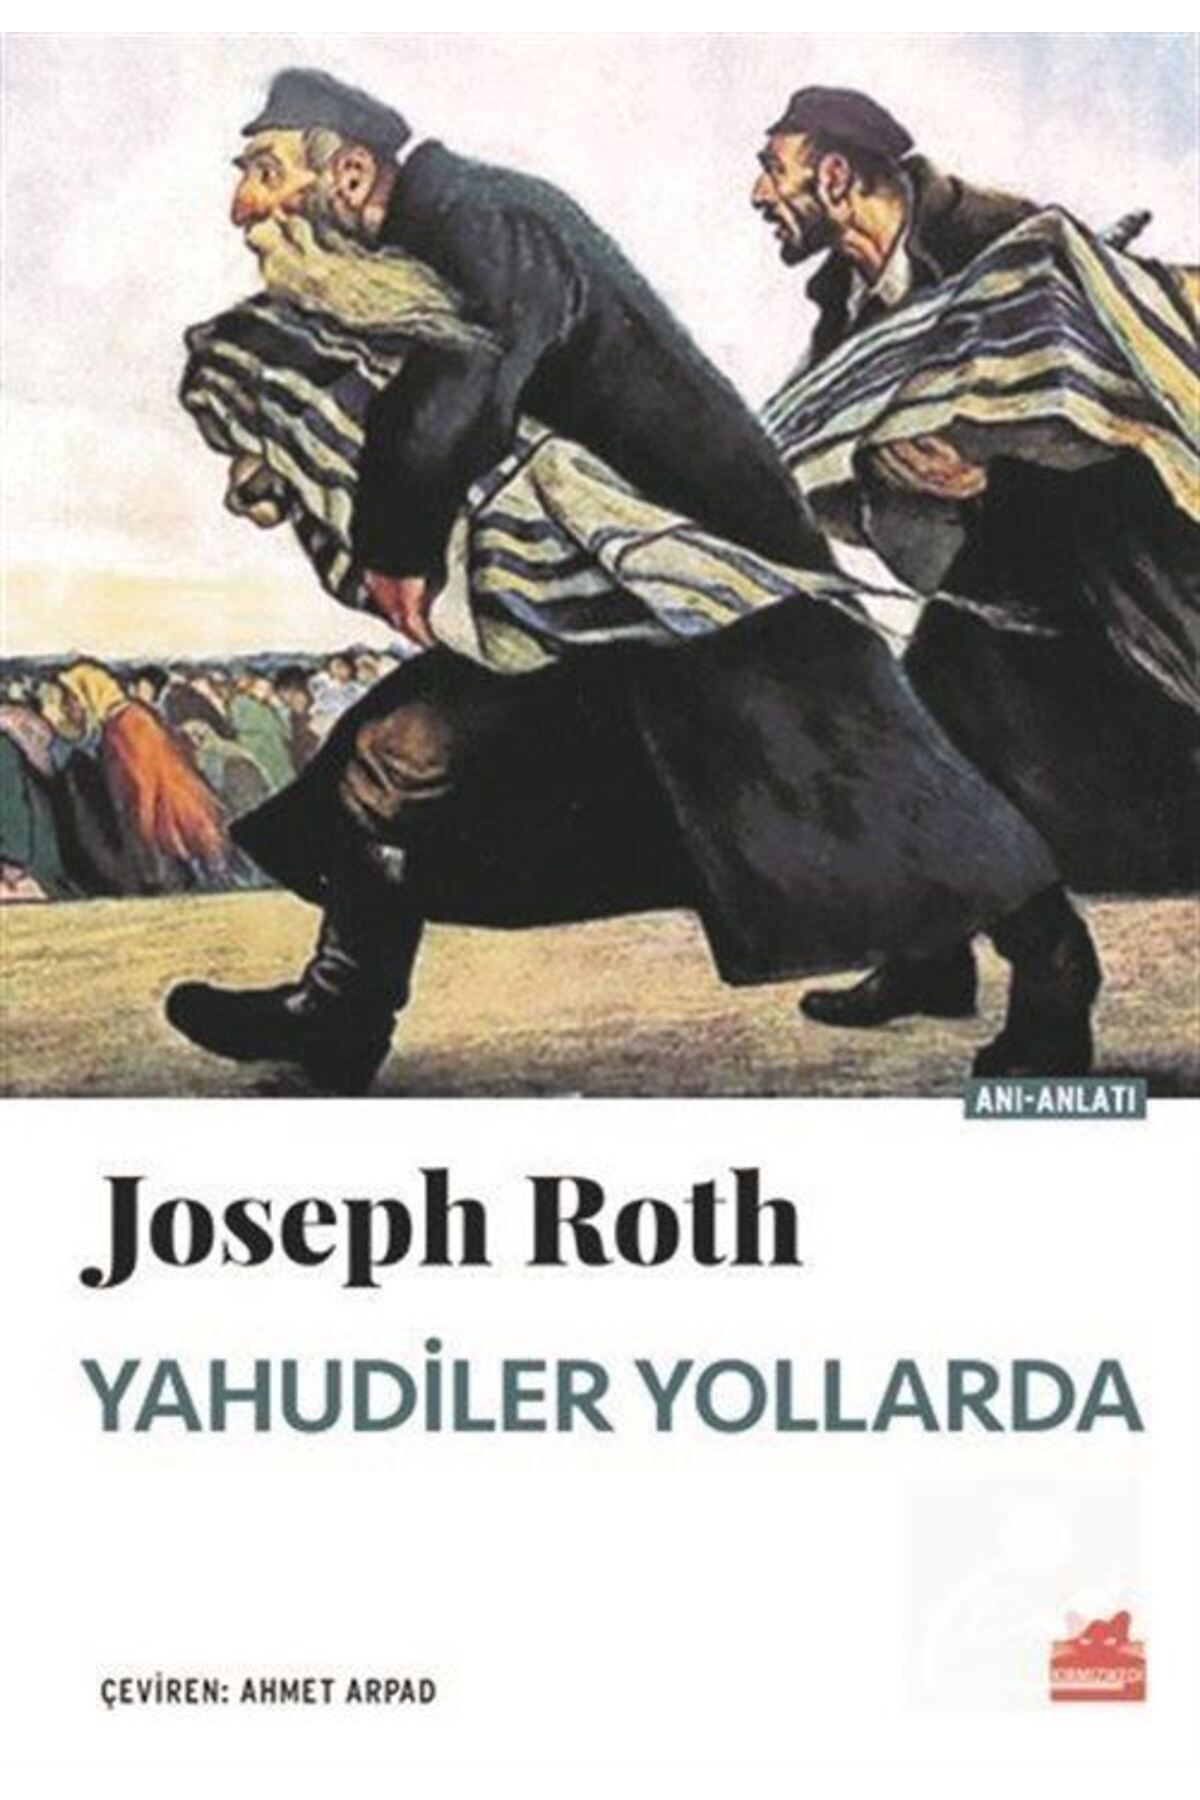 Kırmızı Kedi Yayınları Yahudiler Yollarda & Galiçya'dan Viyana'ya, Paris'e, New York'a